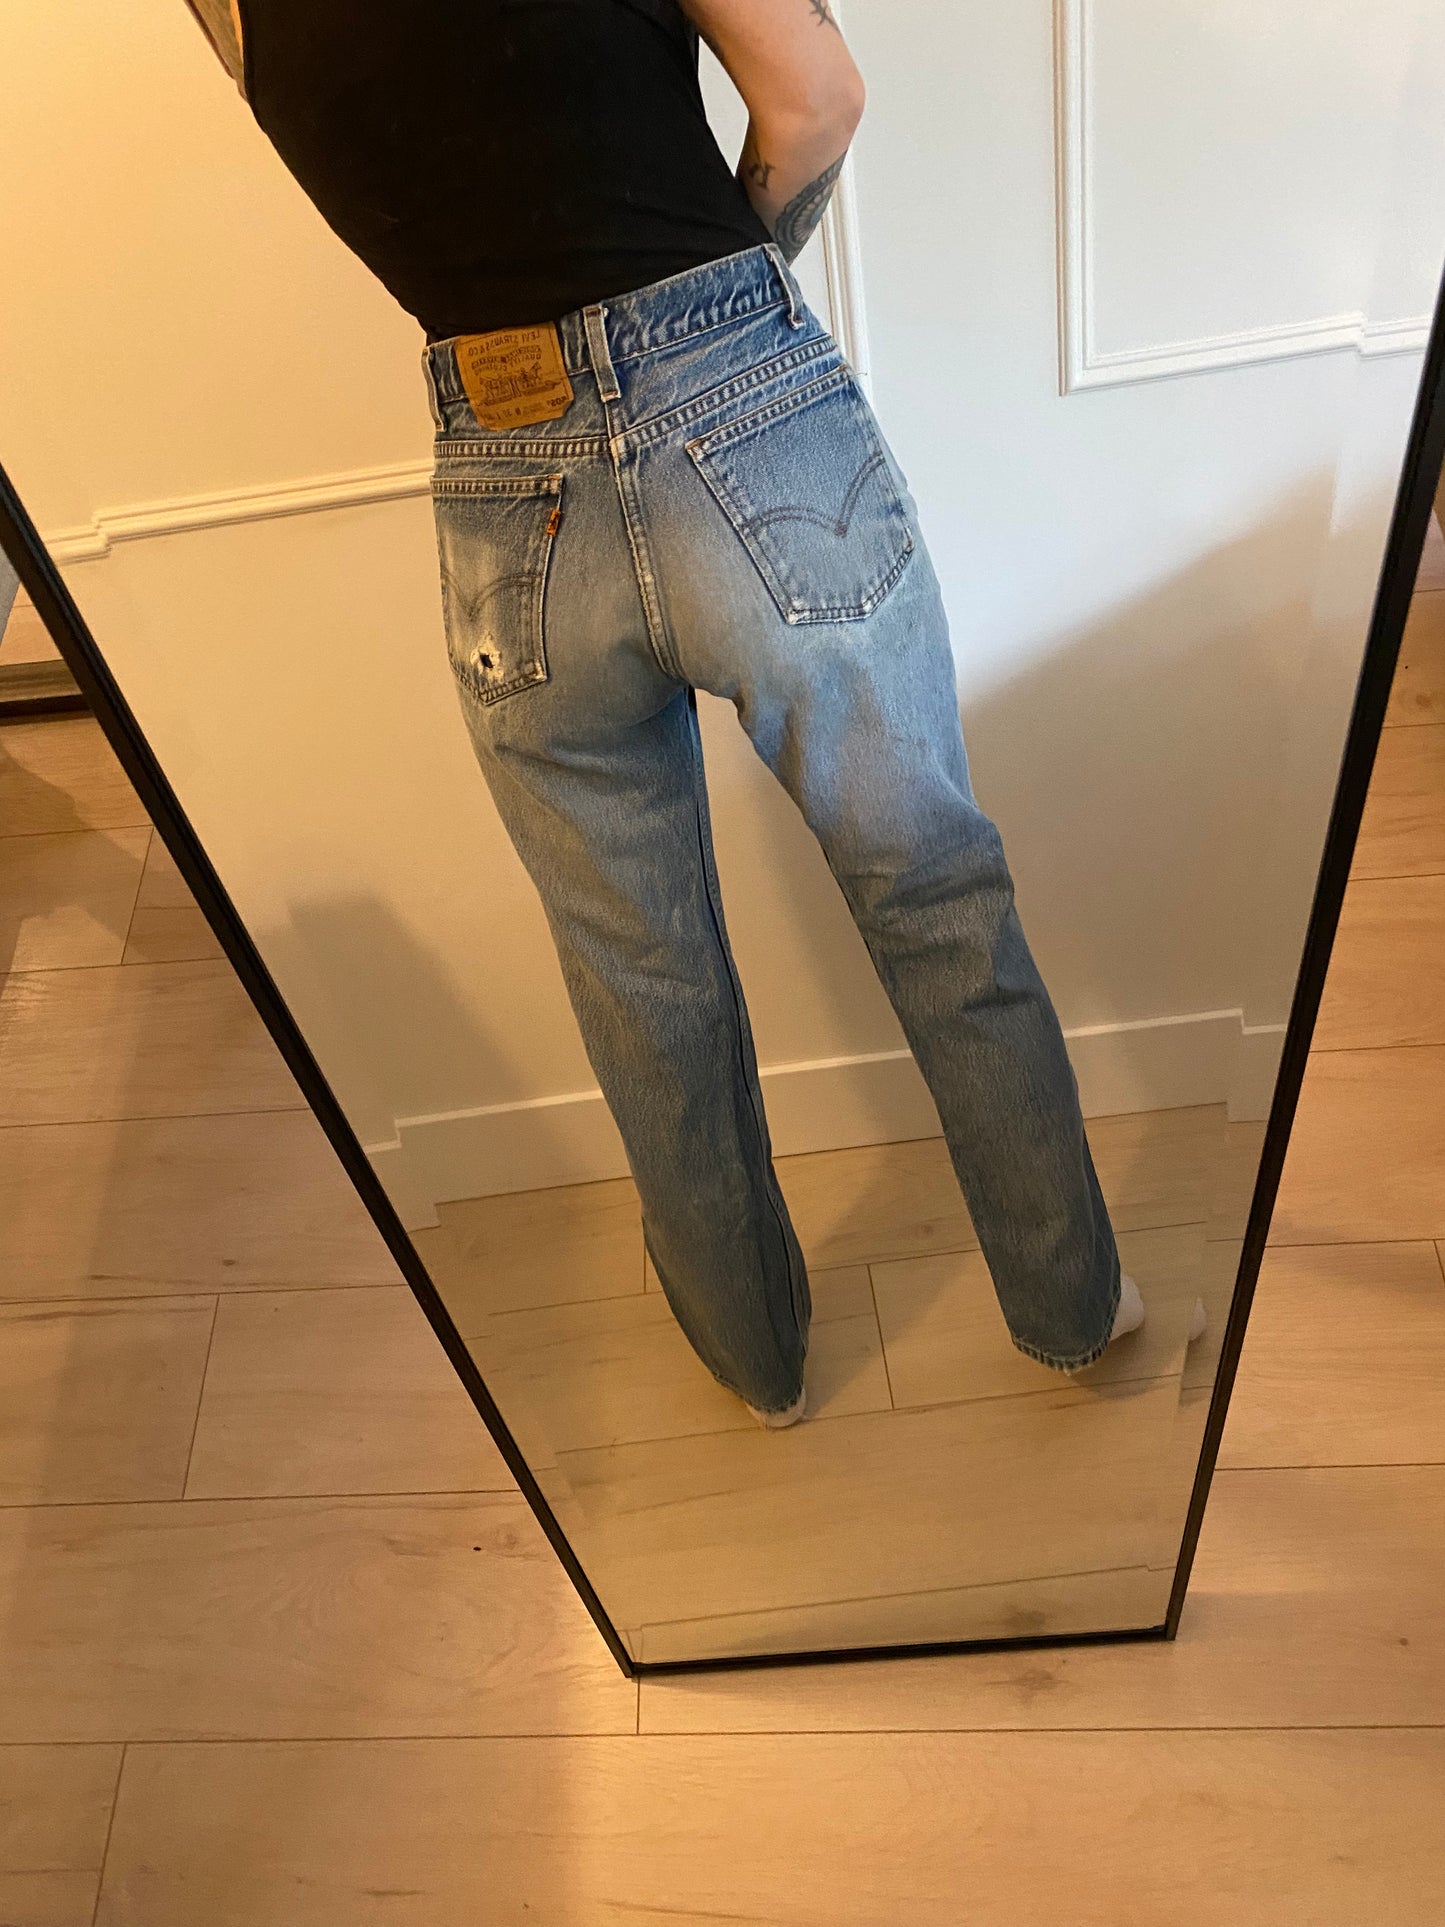 Size 28/29 Levi’s 505 jeans